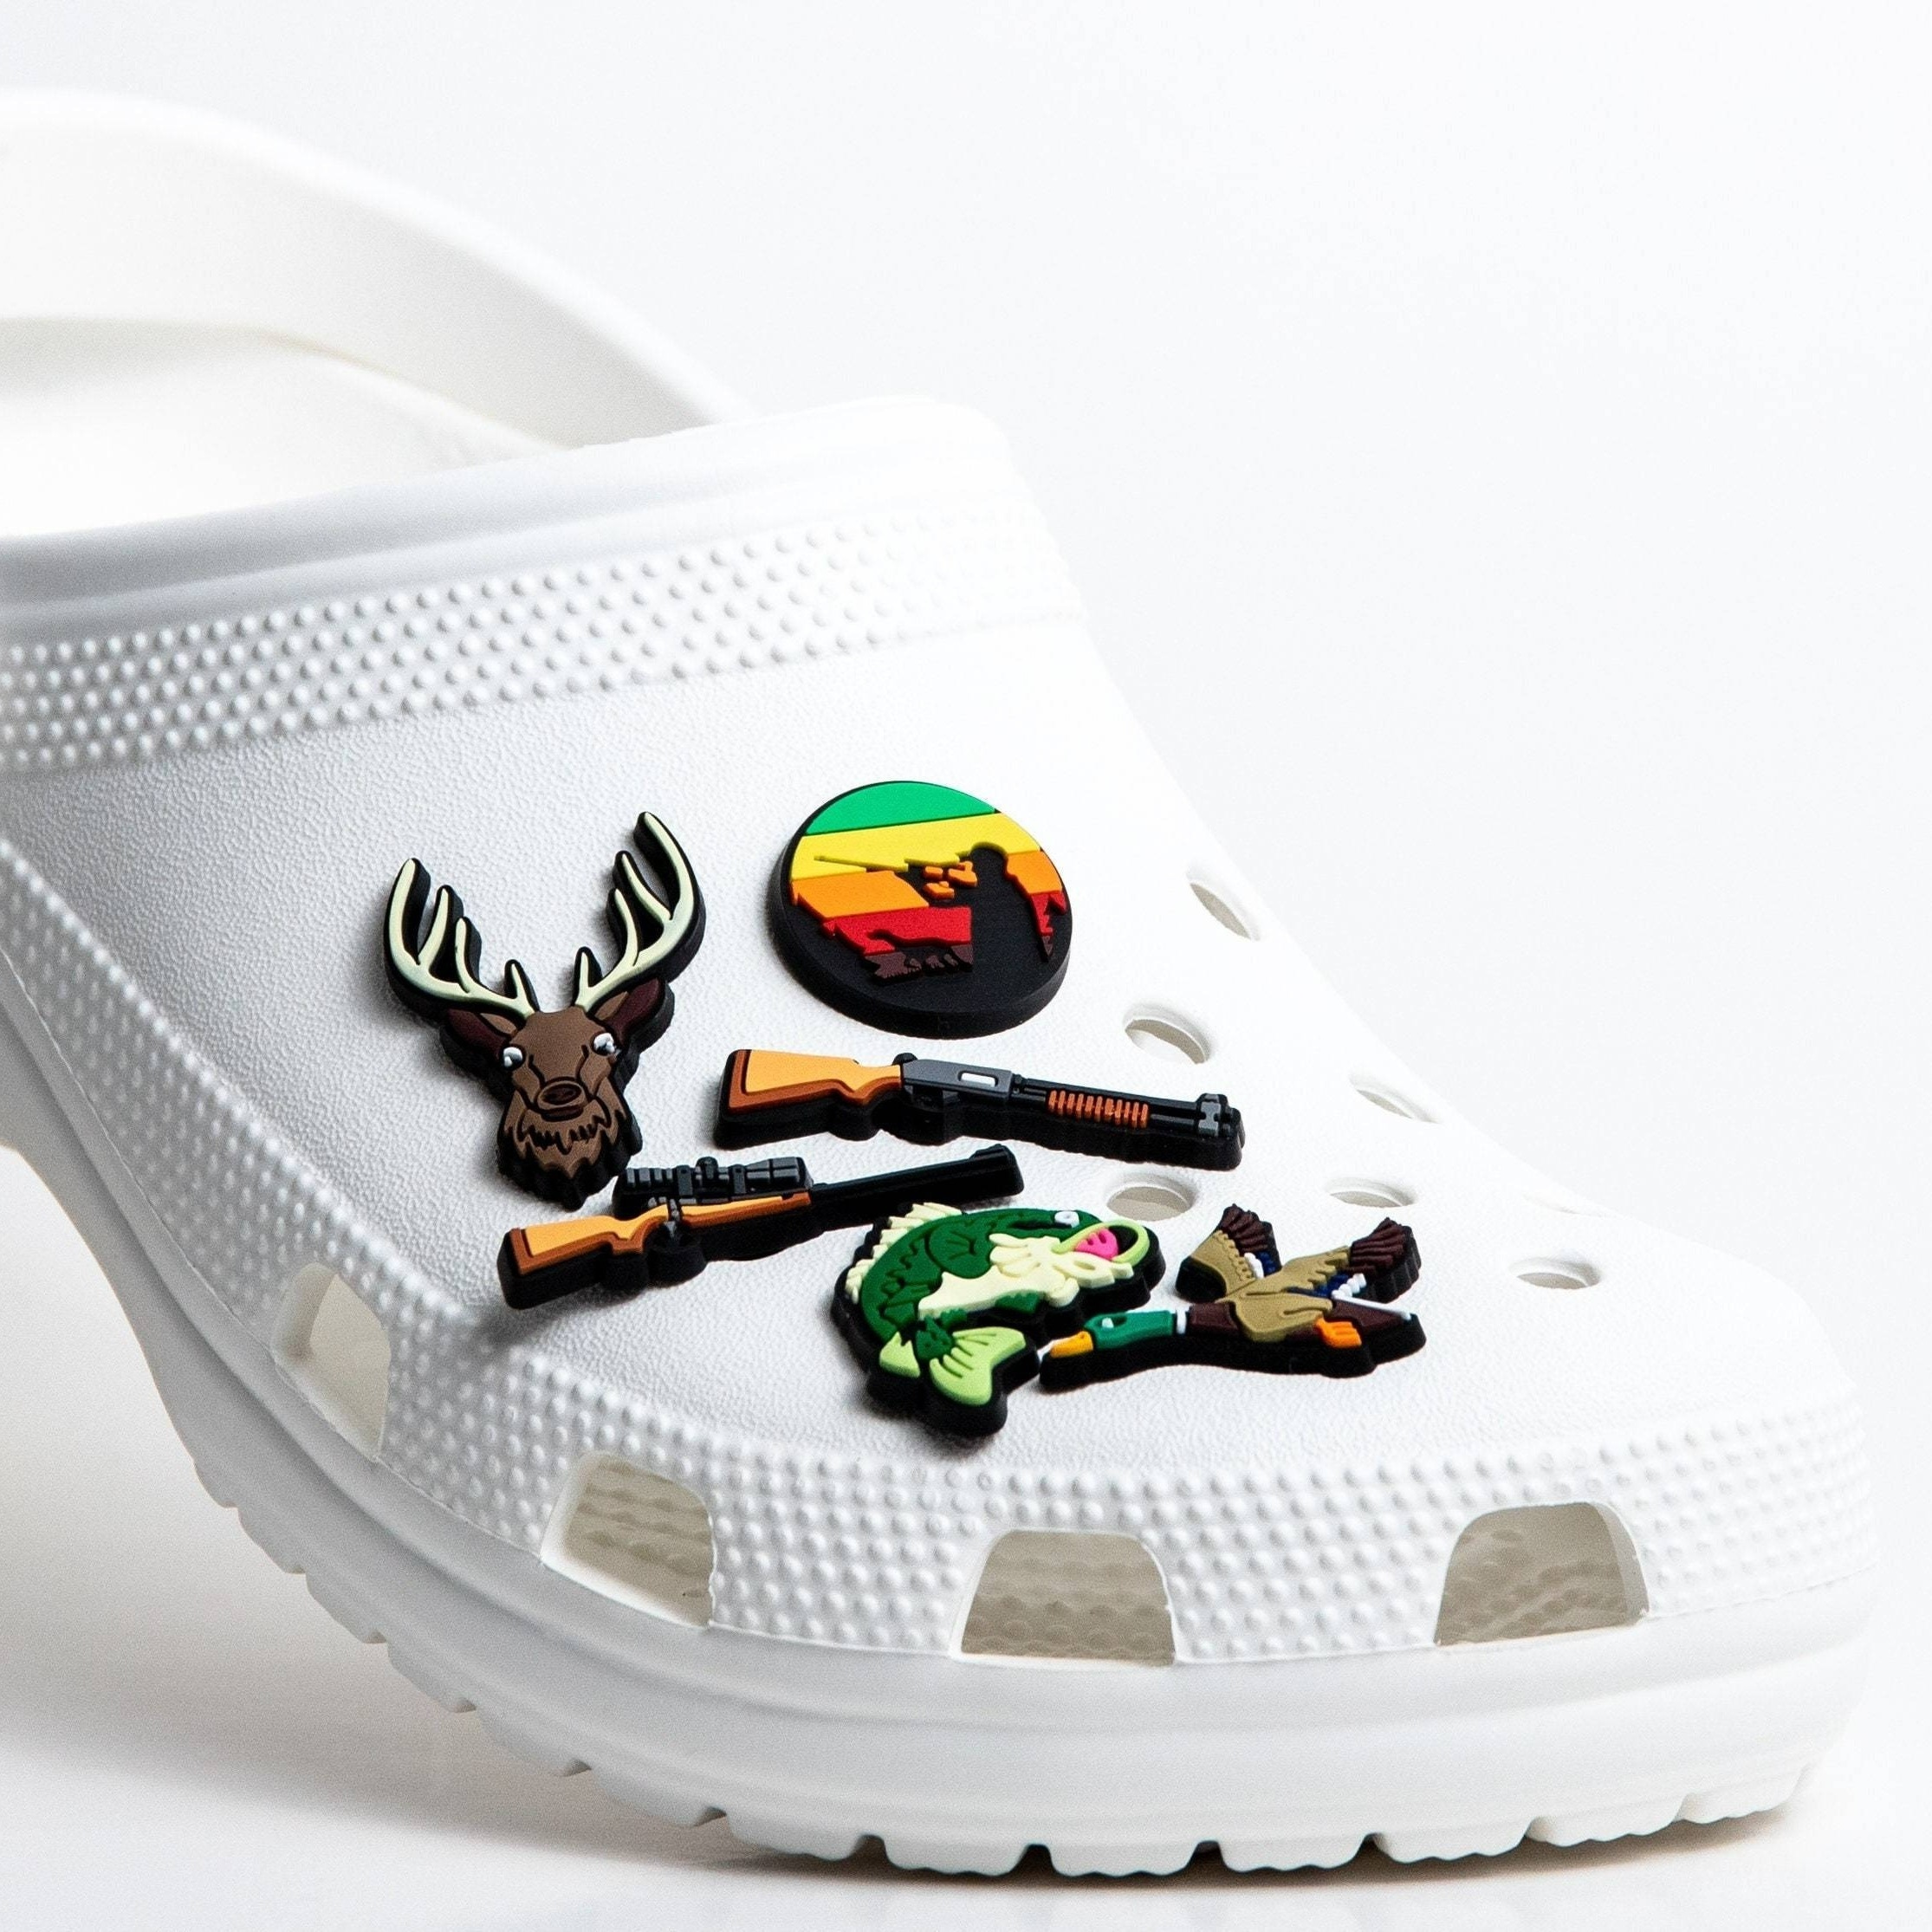 Crocs Unisex-Adult Jibbitz Shoe Charms - Letter Shoe Greece